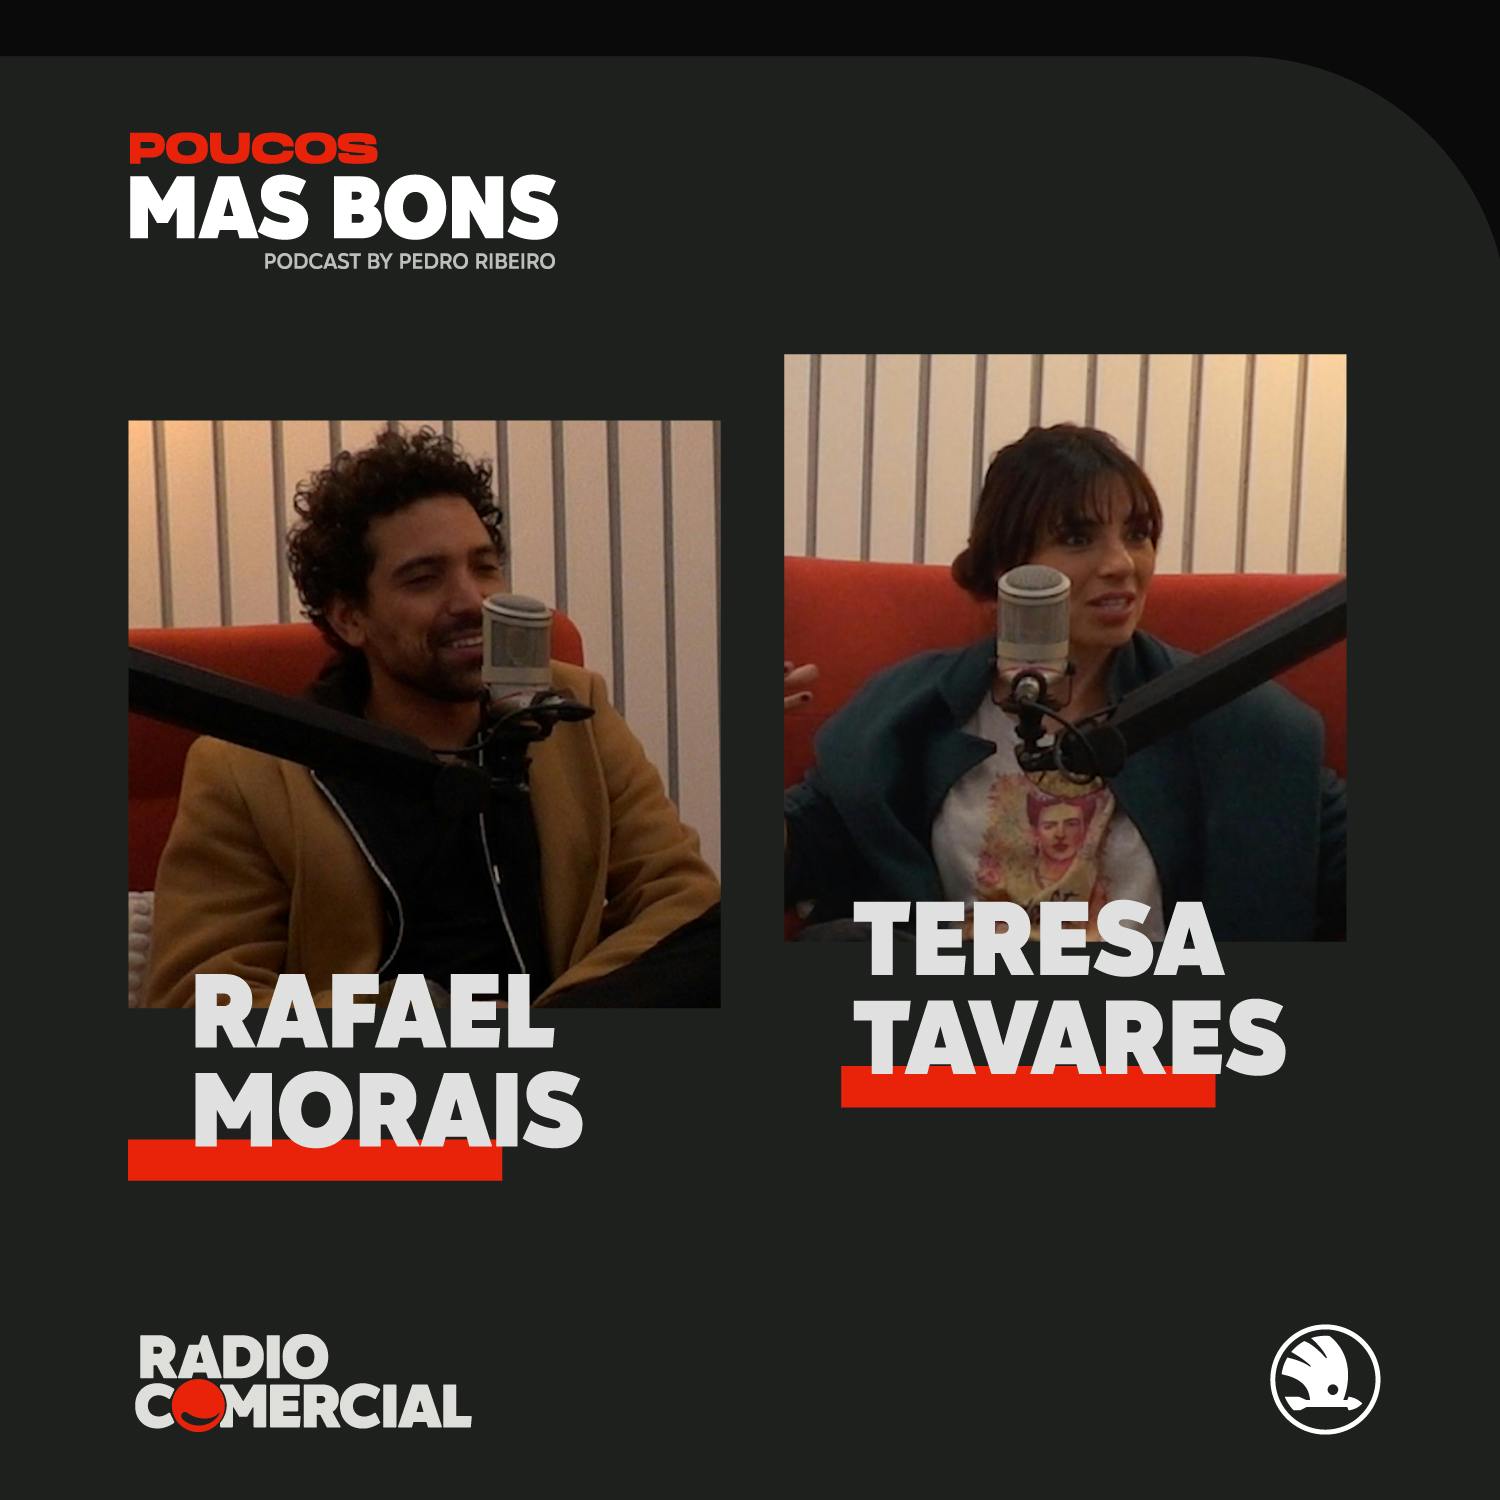 Teresa Tavares e Rafael Morais